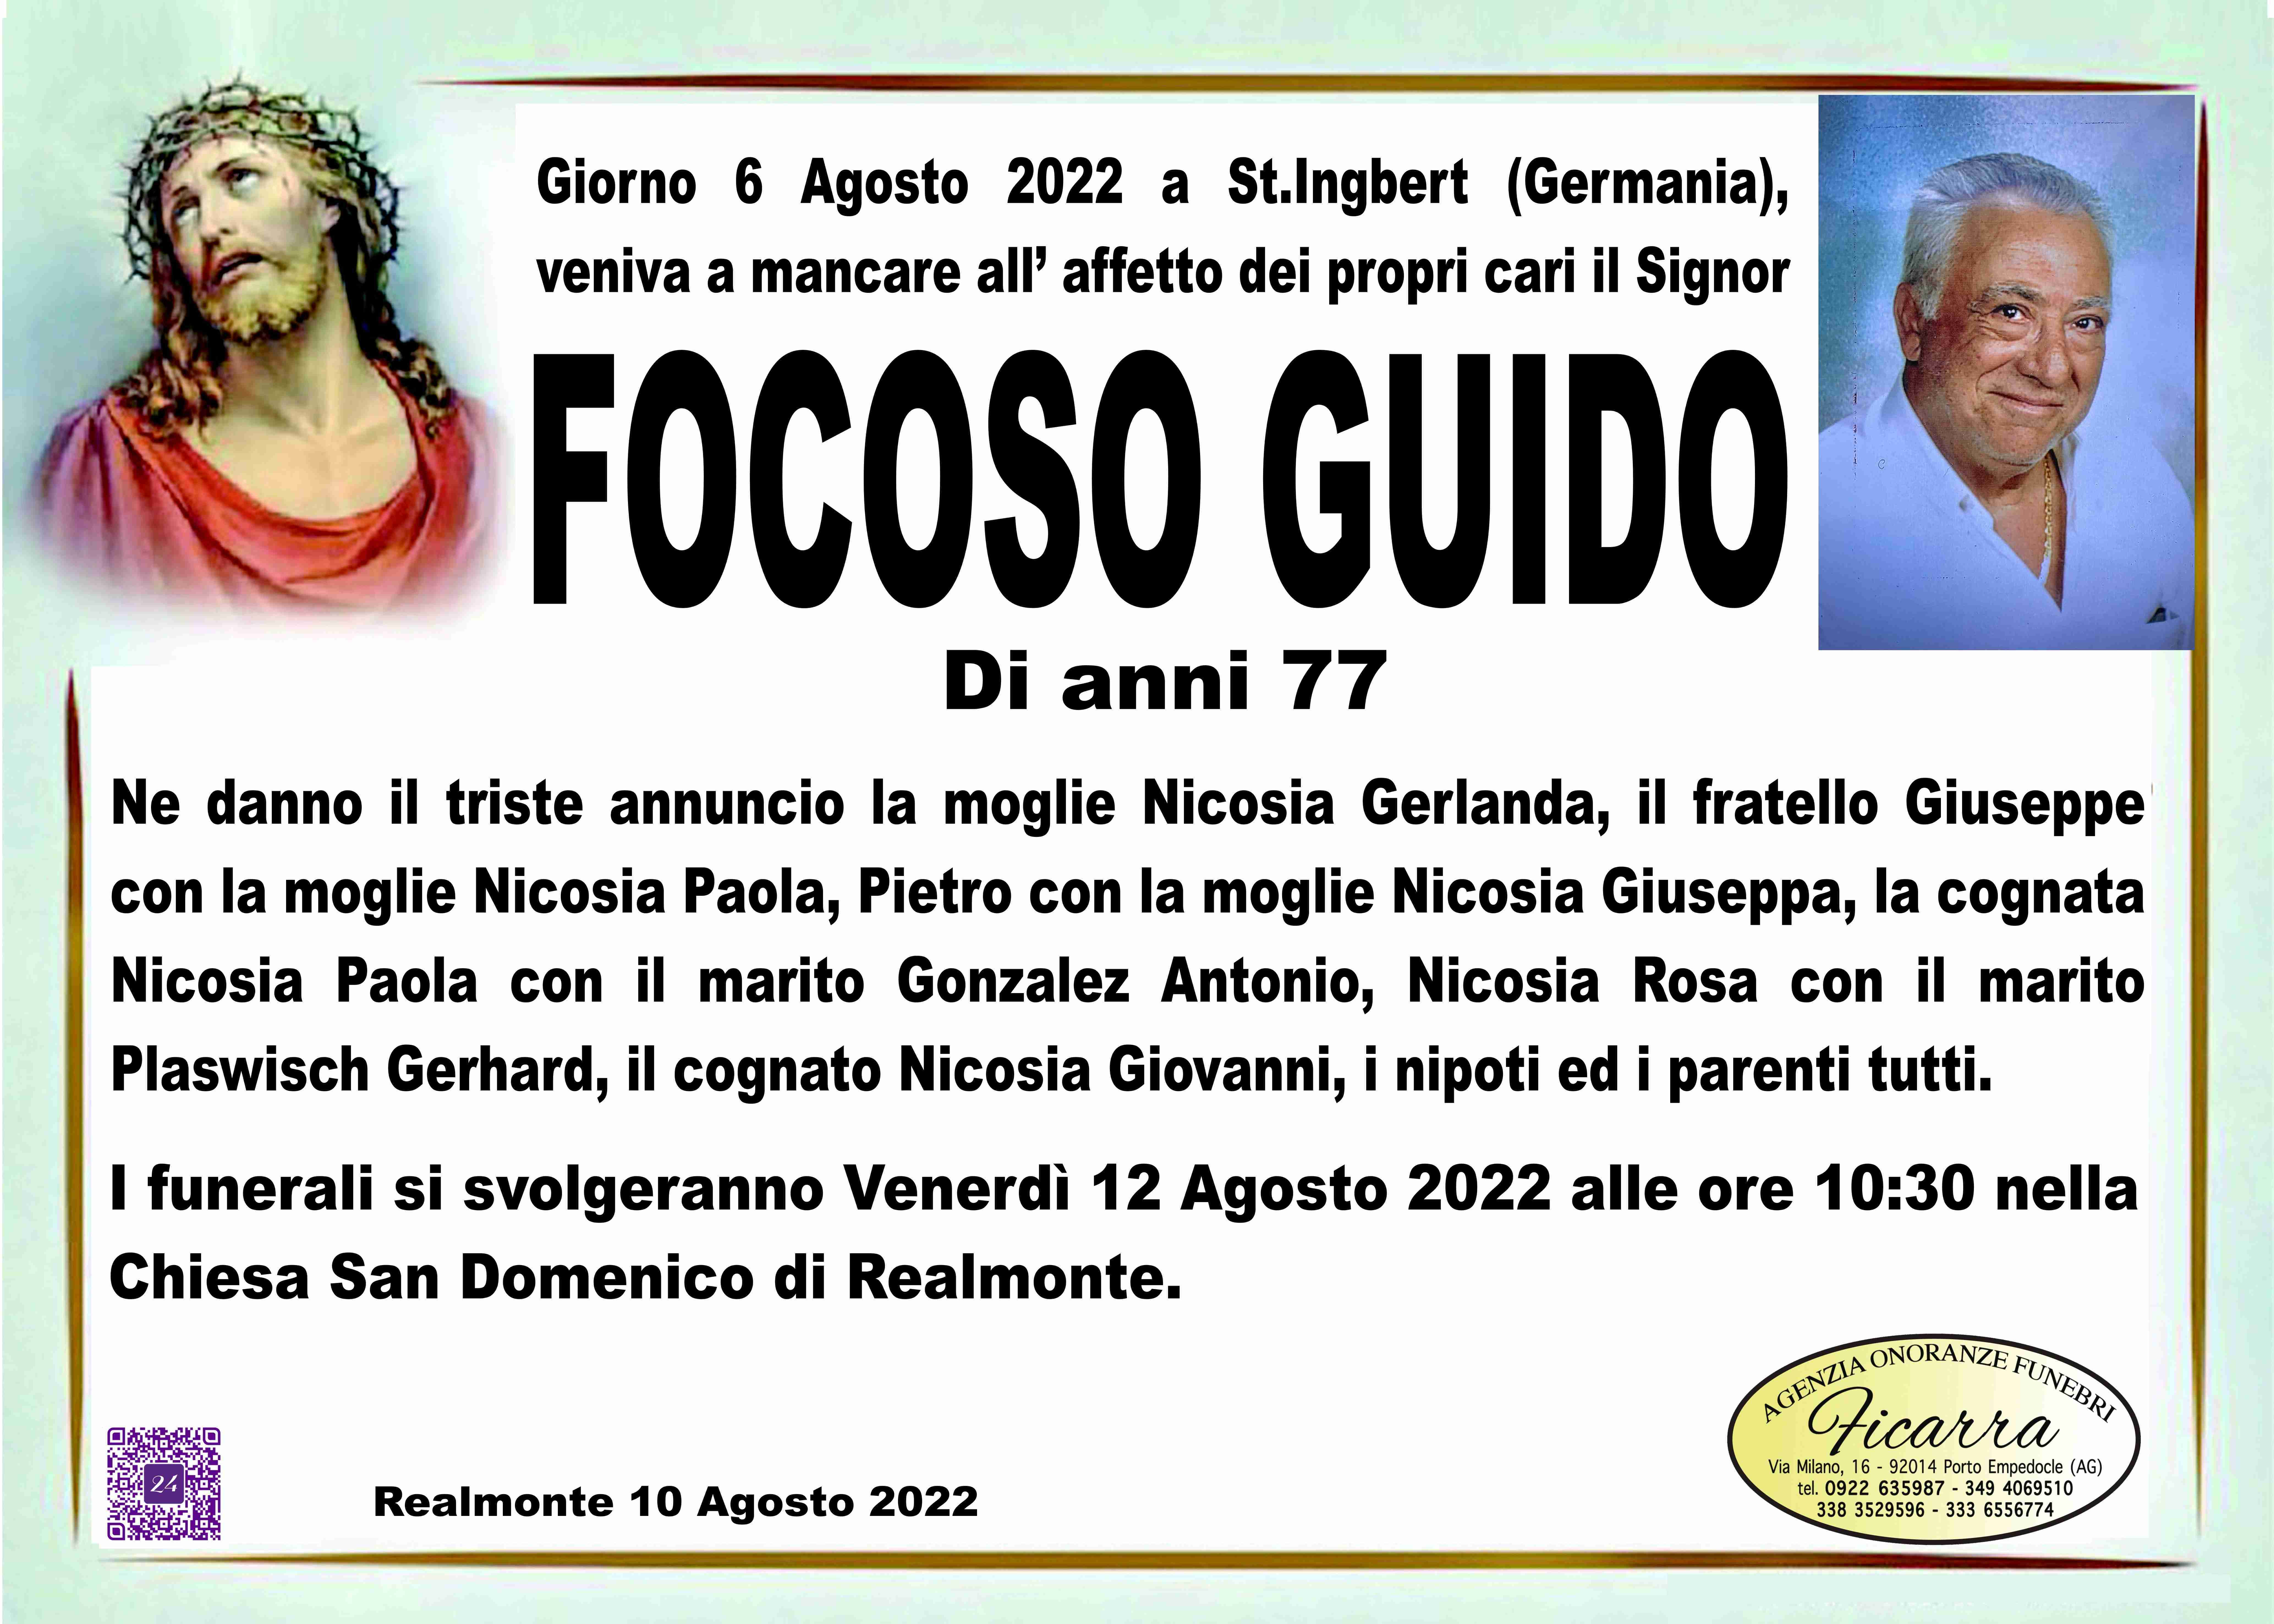 Guido Focoso